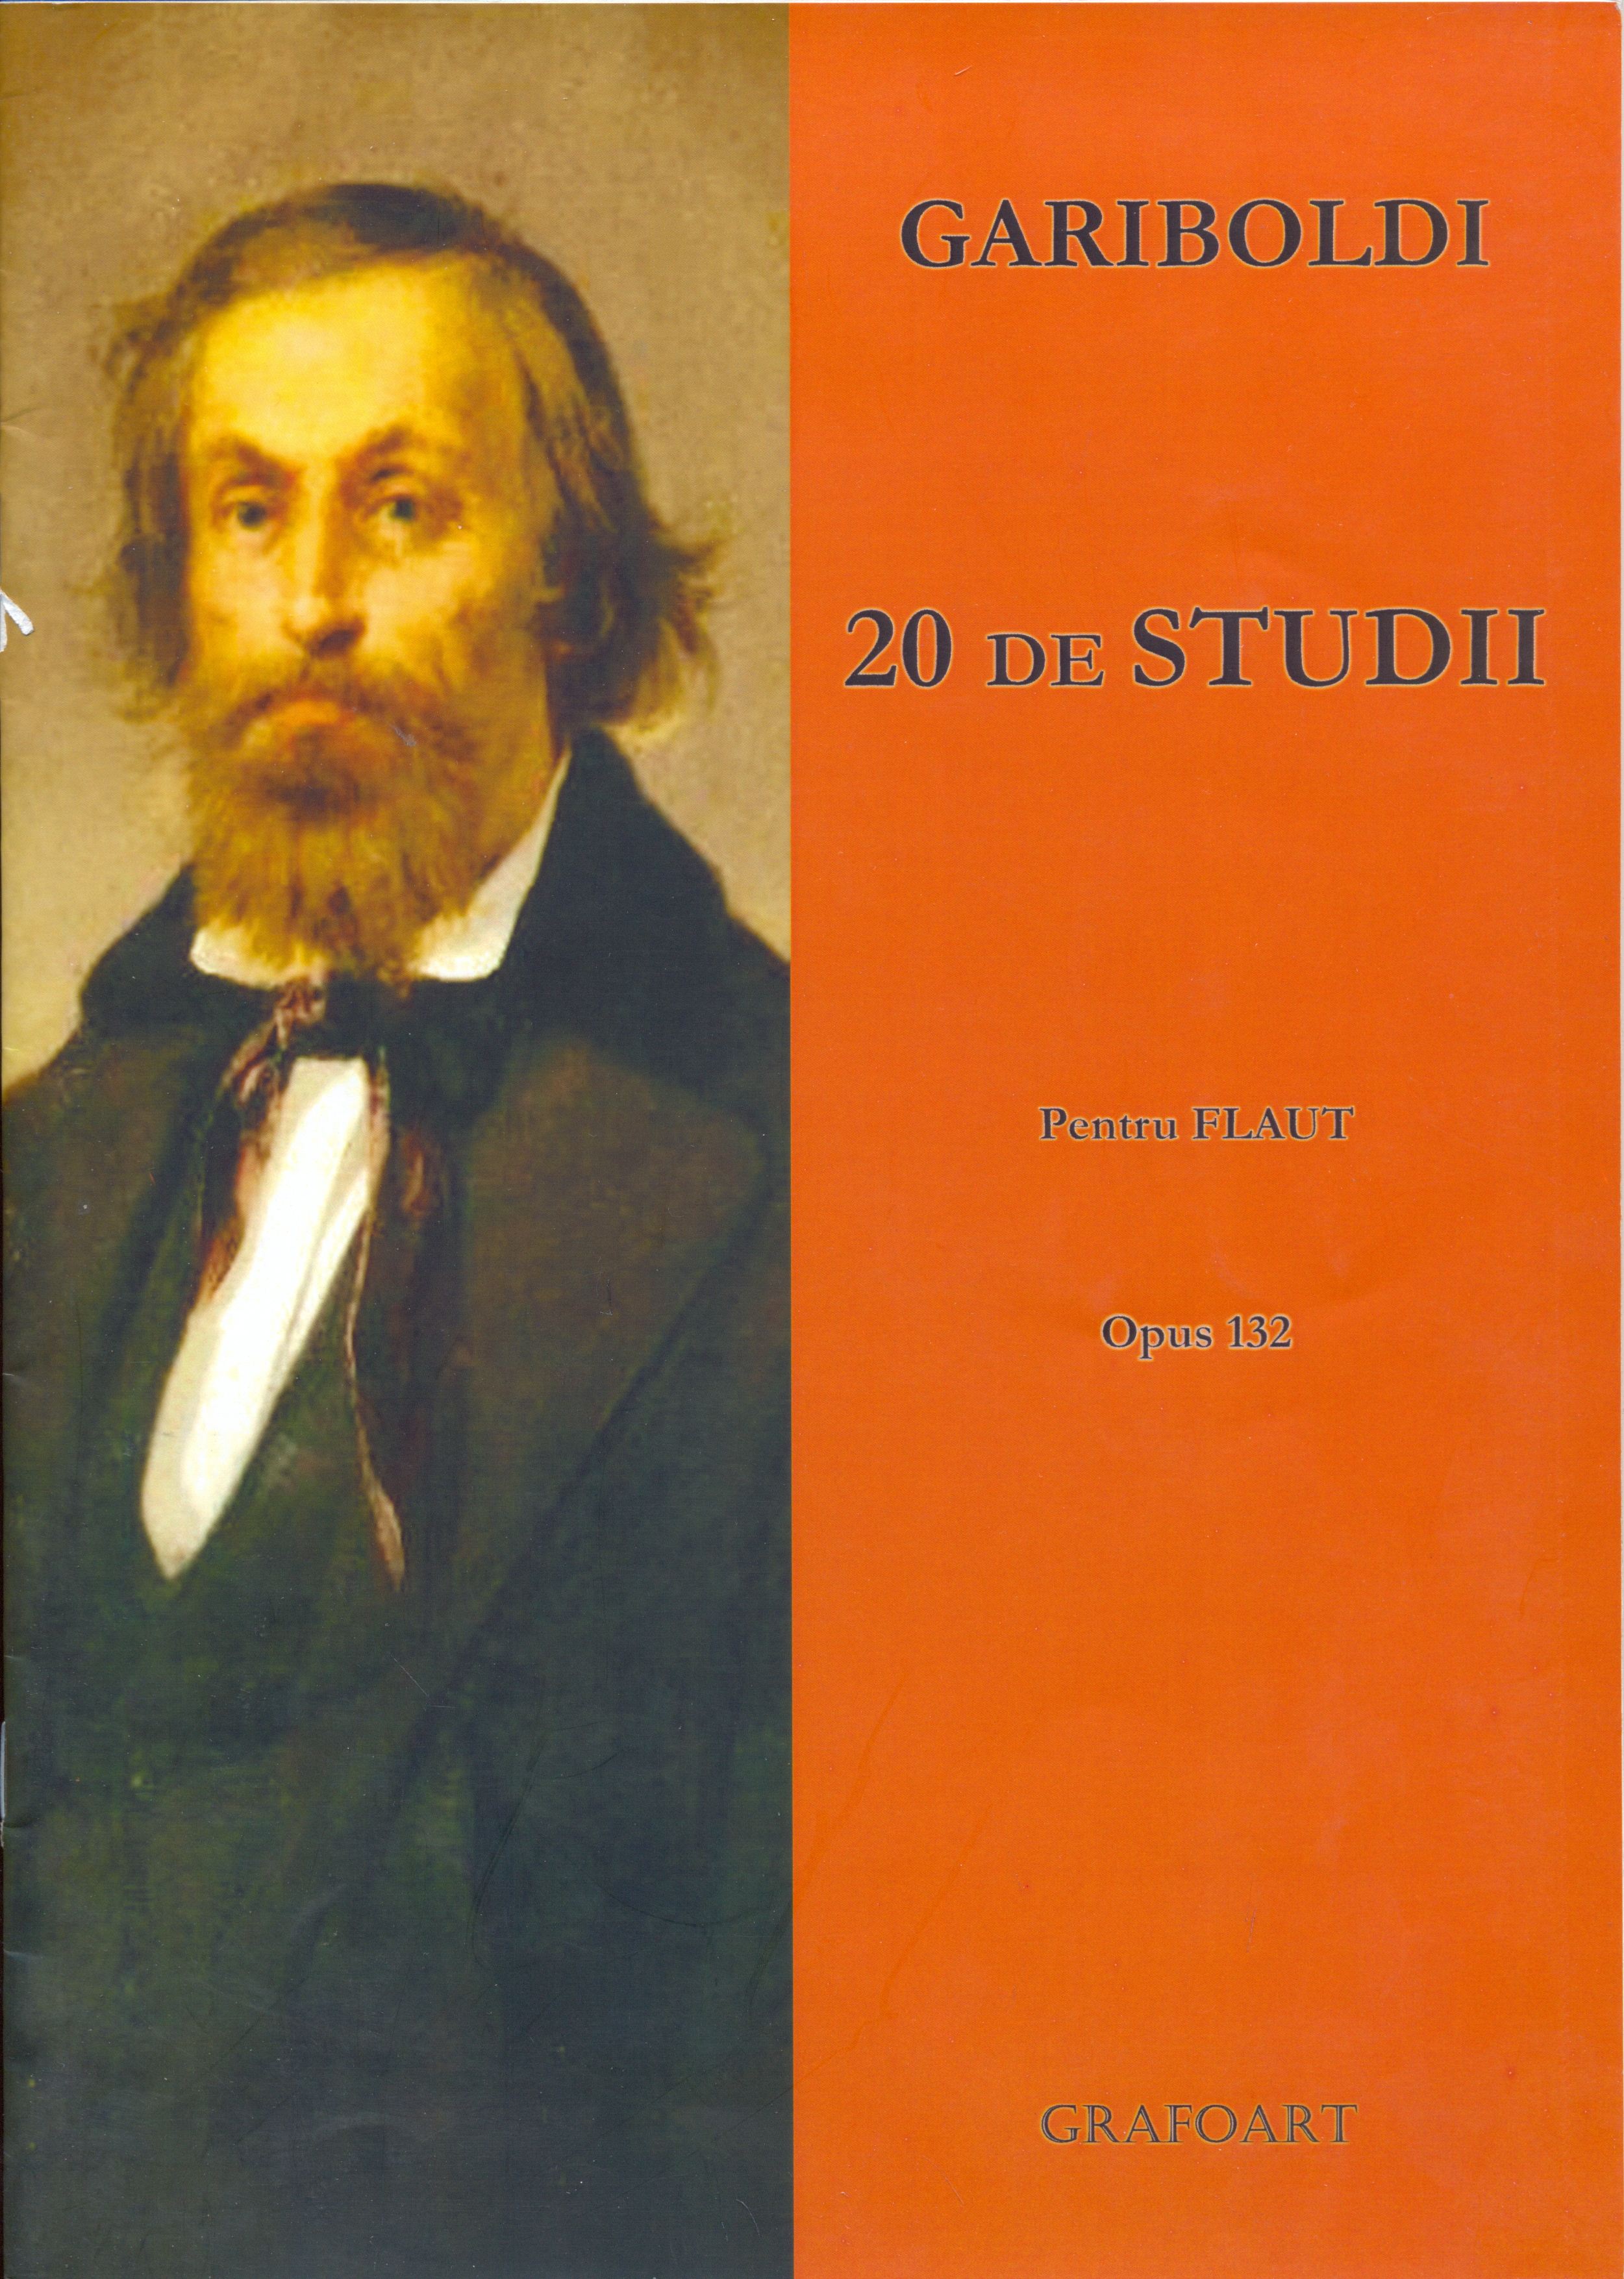 20 Studii Op. 132